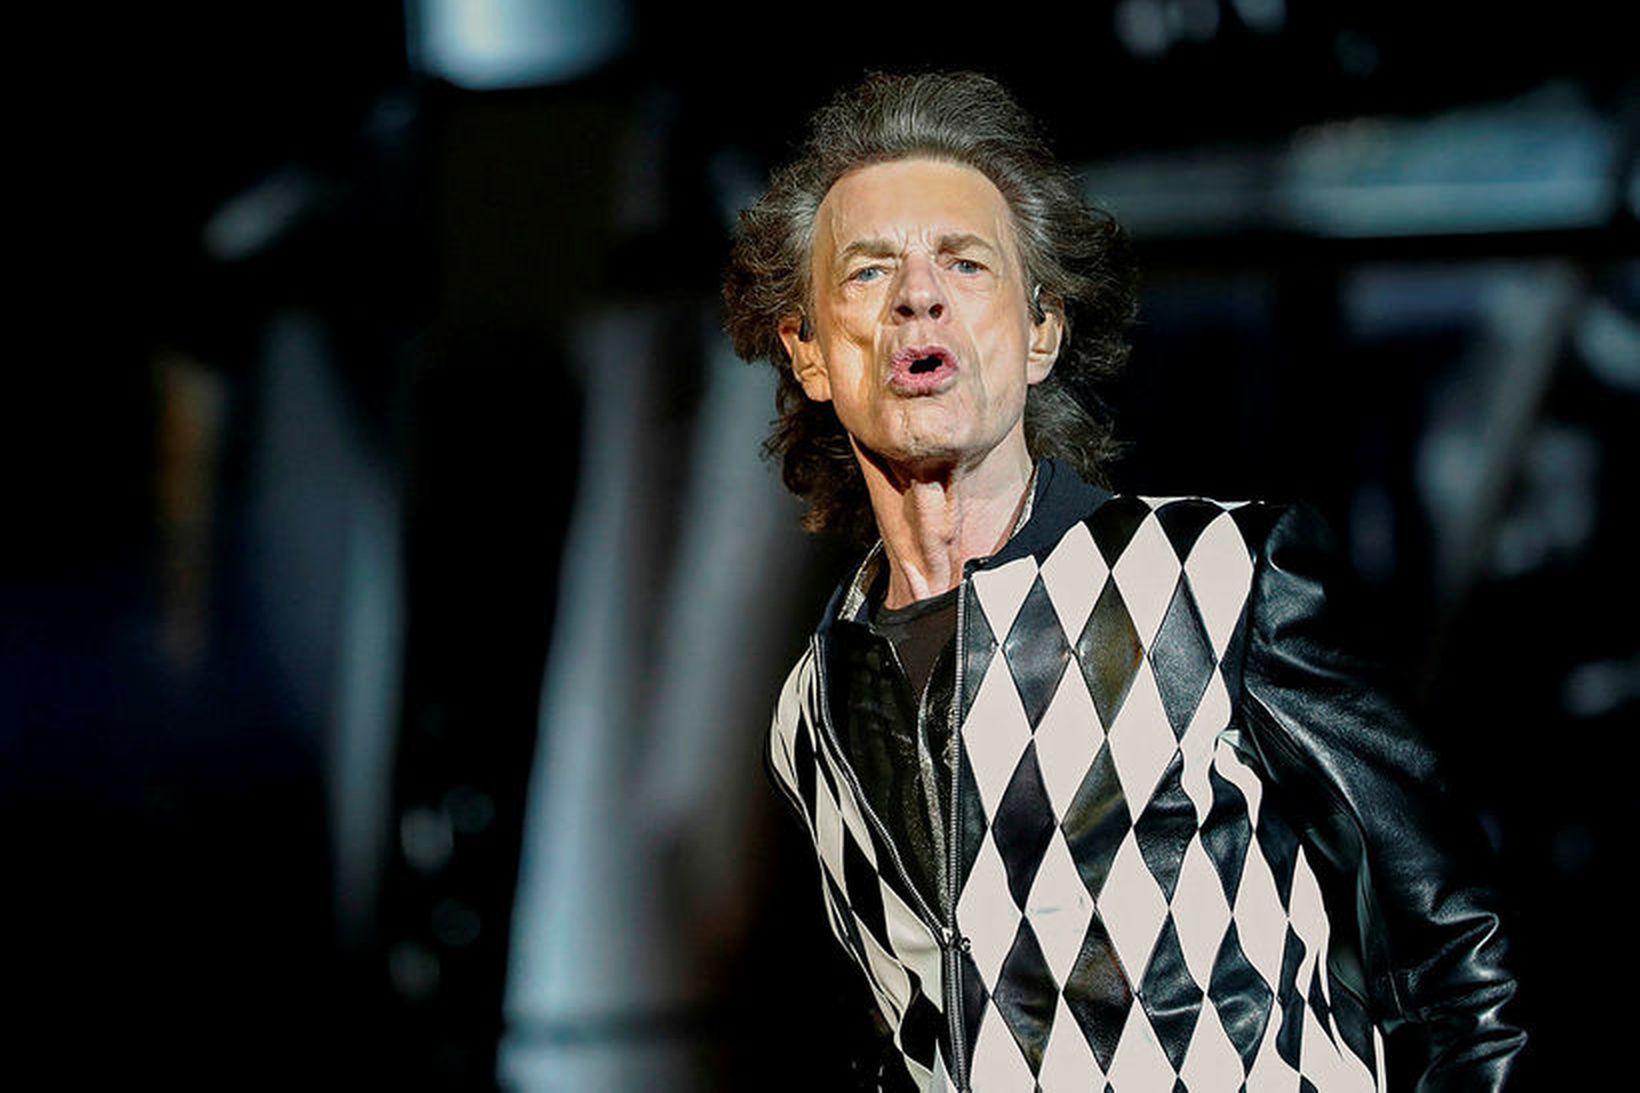 Mick Jagger keypti hús í Flórída handa ungu kærustunni.